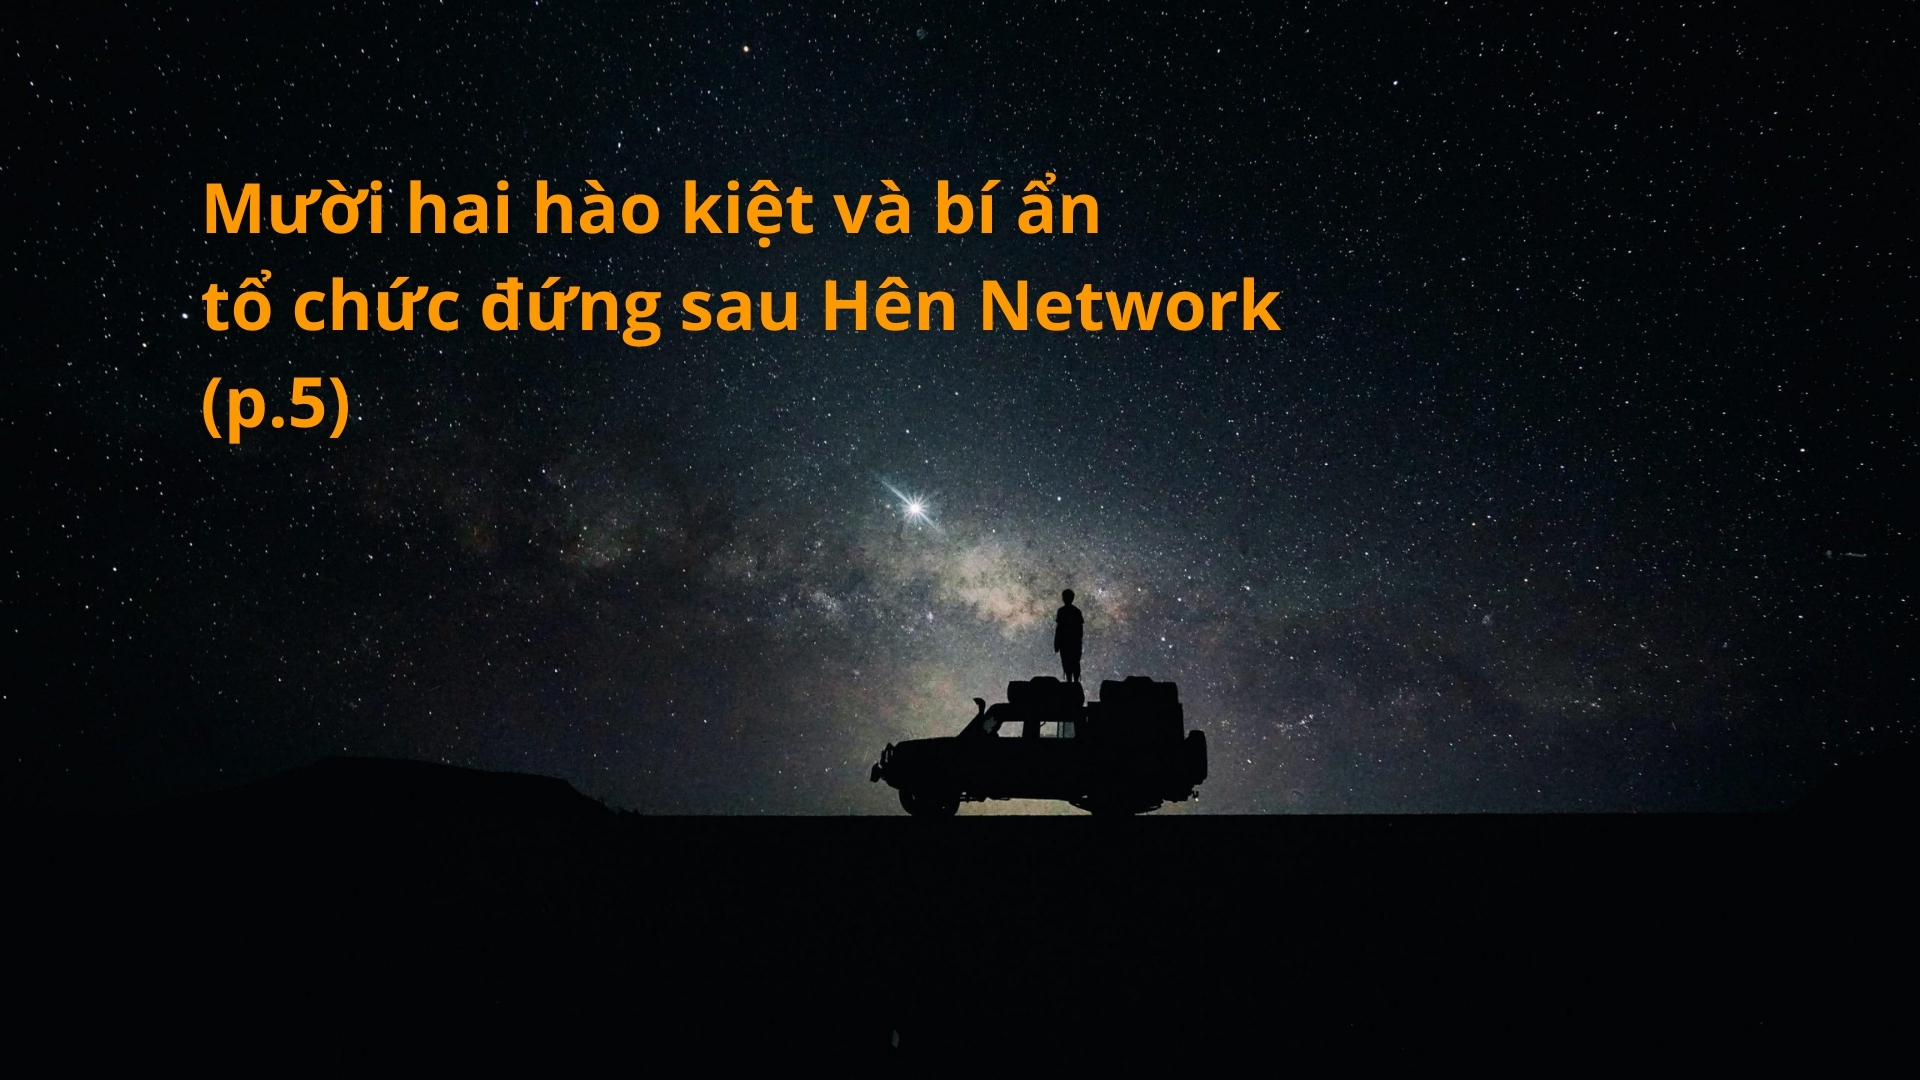 Mười hai hào kiệt và bí ẩn tổ chức đứng sau Hên Network (p.5)